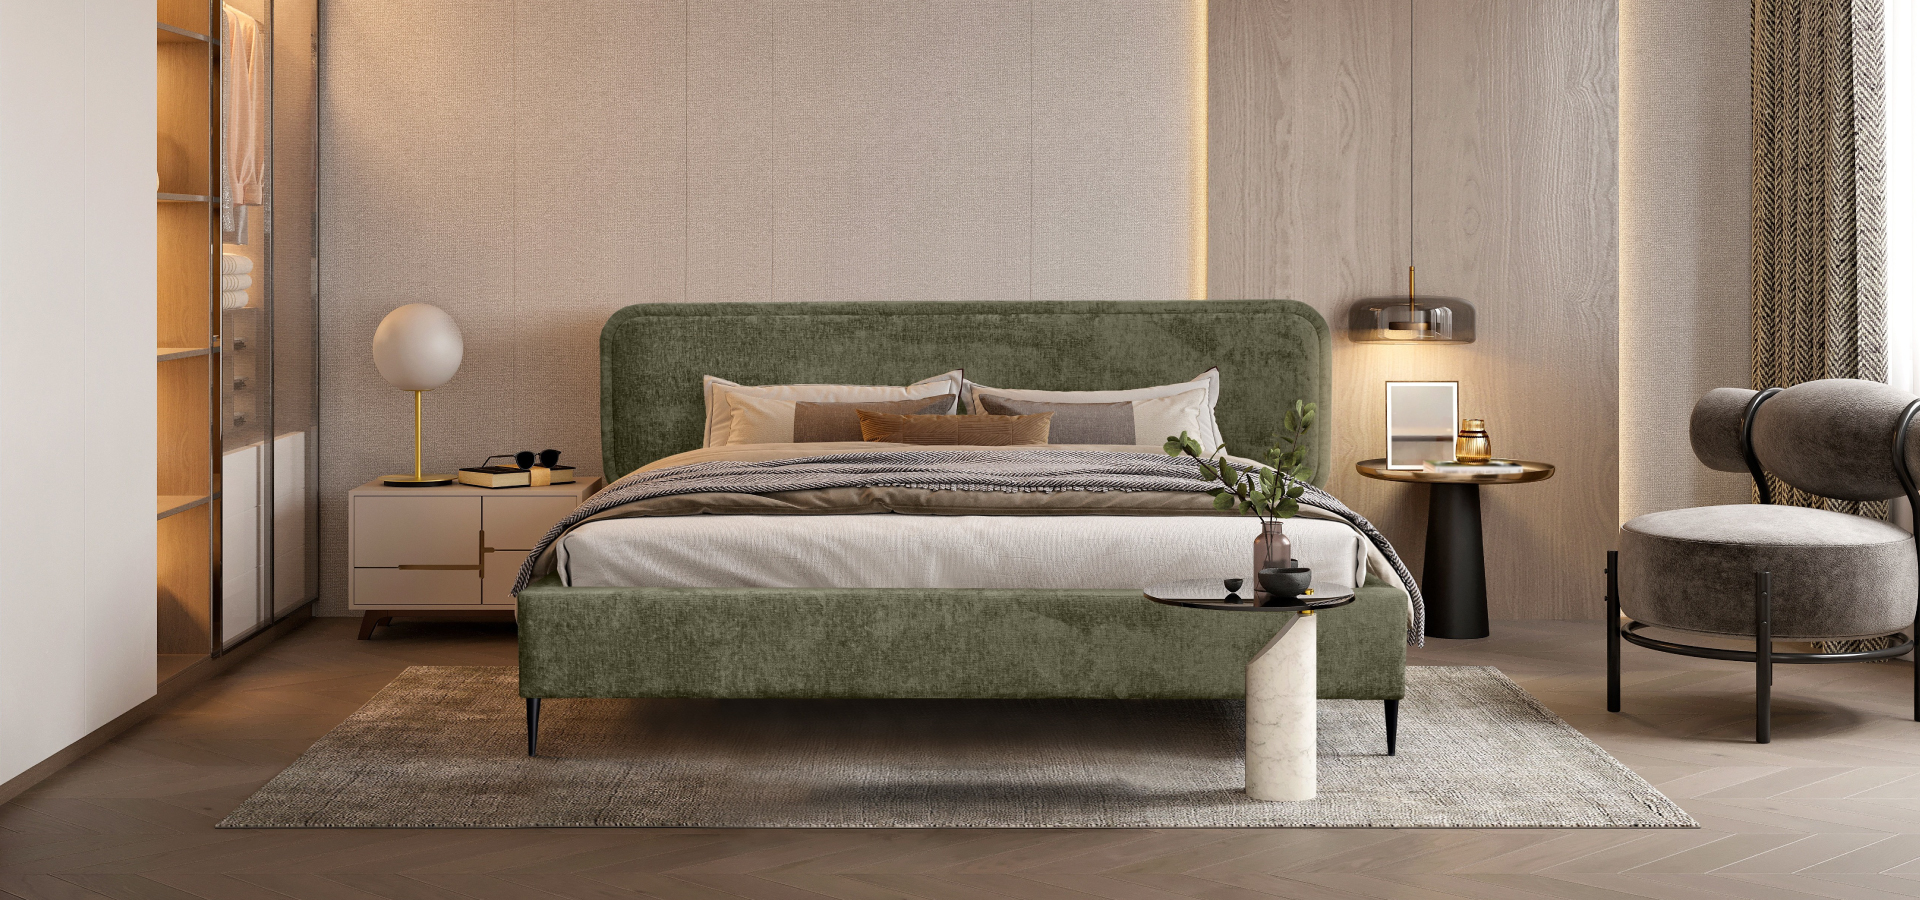 Zielone łóżko na czarnych nóżkach w eleganckiej sypialni w odcieniach szarości i beżów. W tle stoliki kawowe, szafka nocna oraz designerski fotel.